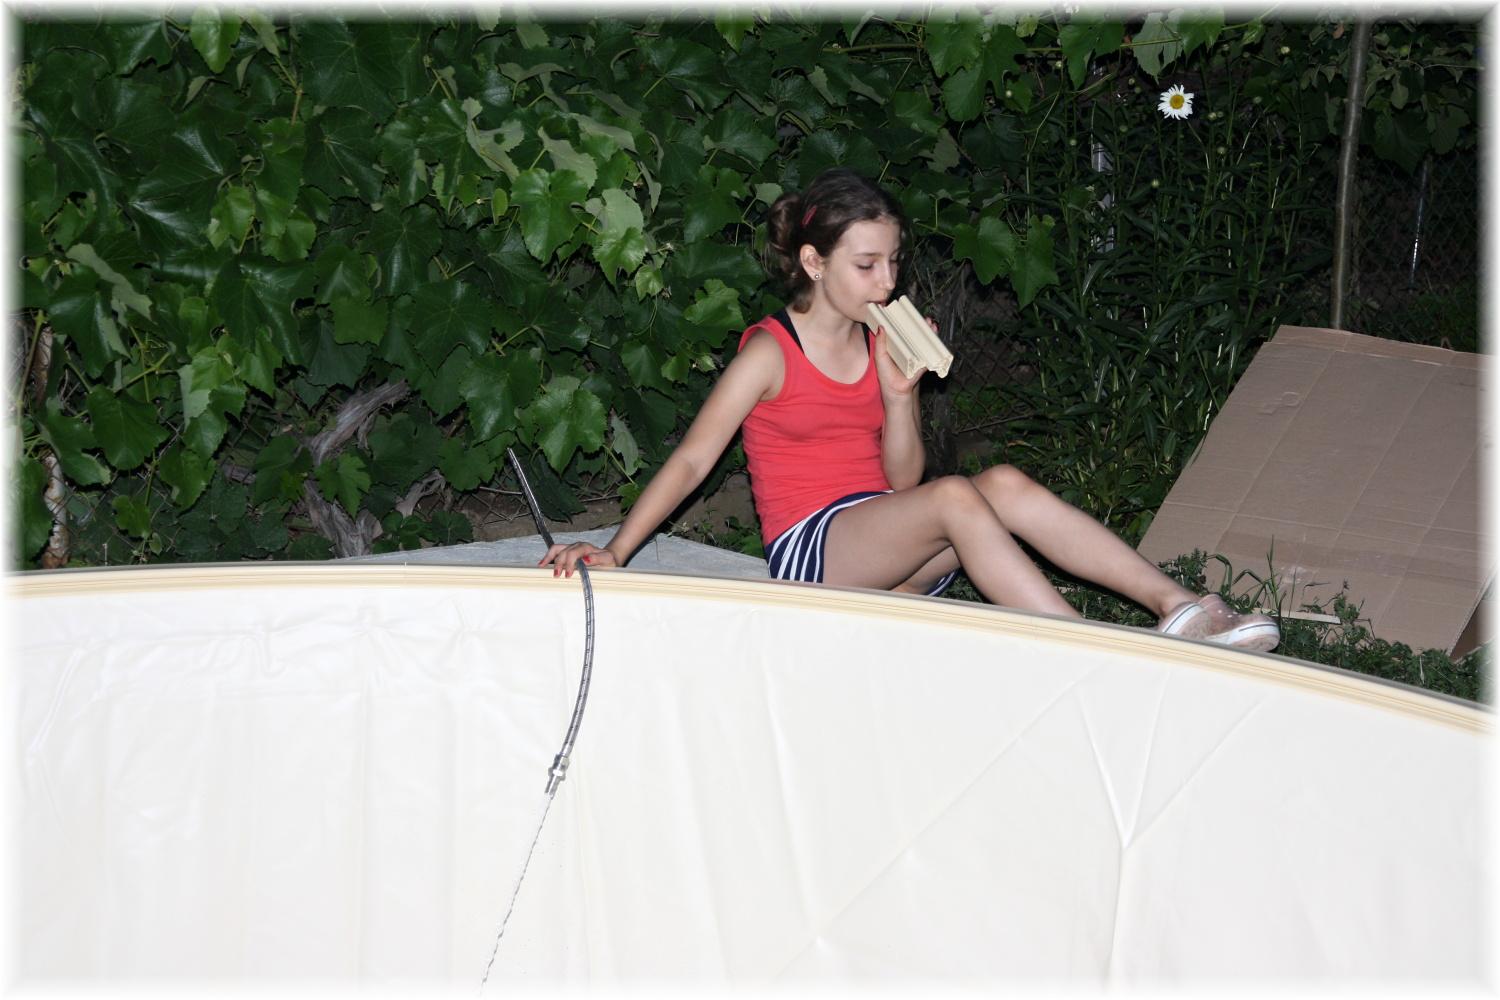 Vlastníma rukama - ze skleníku bazén - Dcera napouší a při tom celou dobu brebentí do "mikrofonu". Moderovala reportáž o stavbě bazénu :D